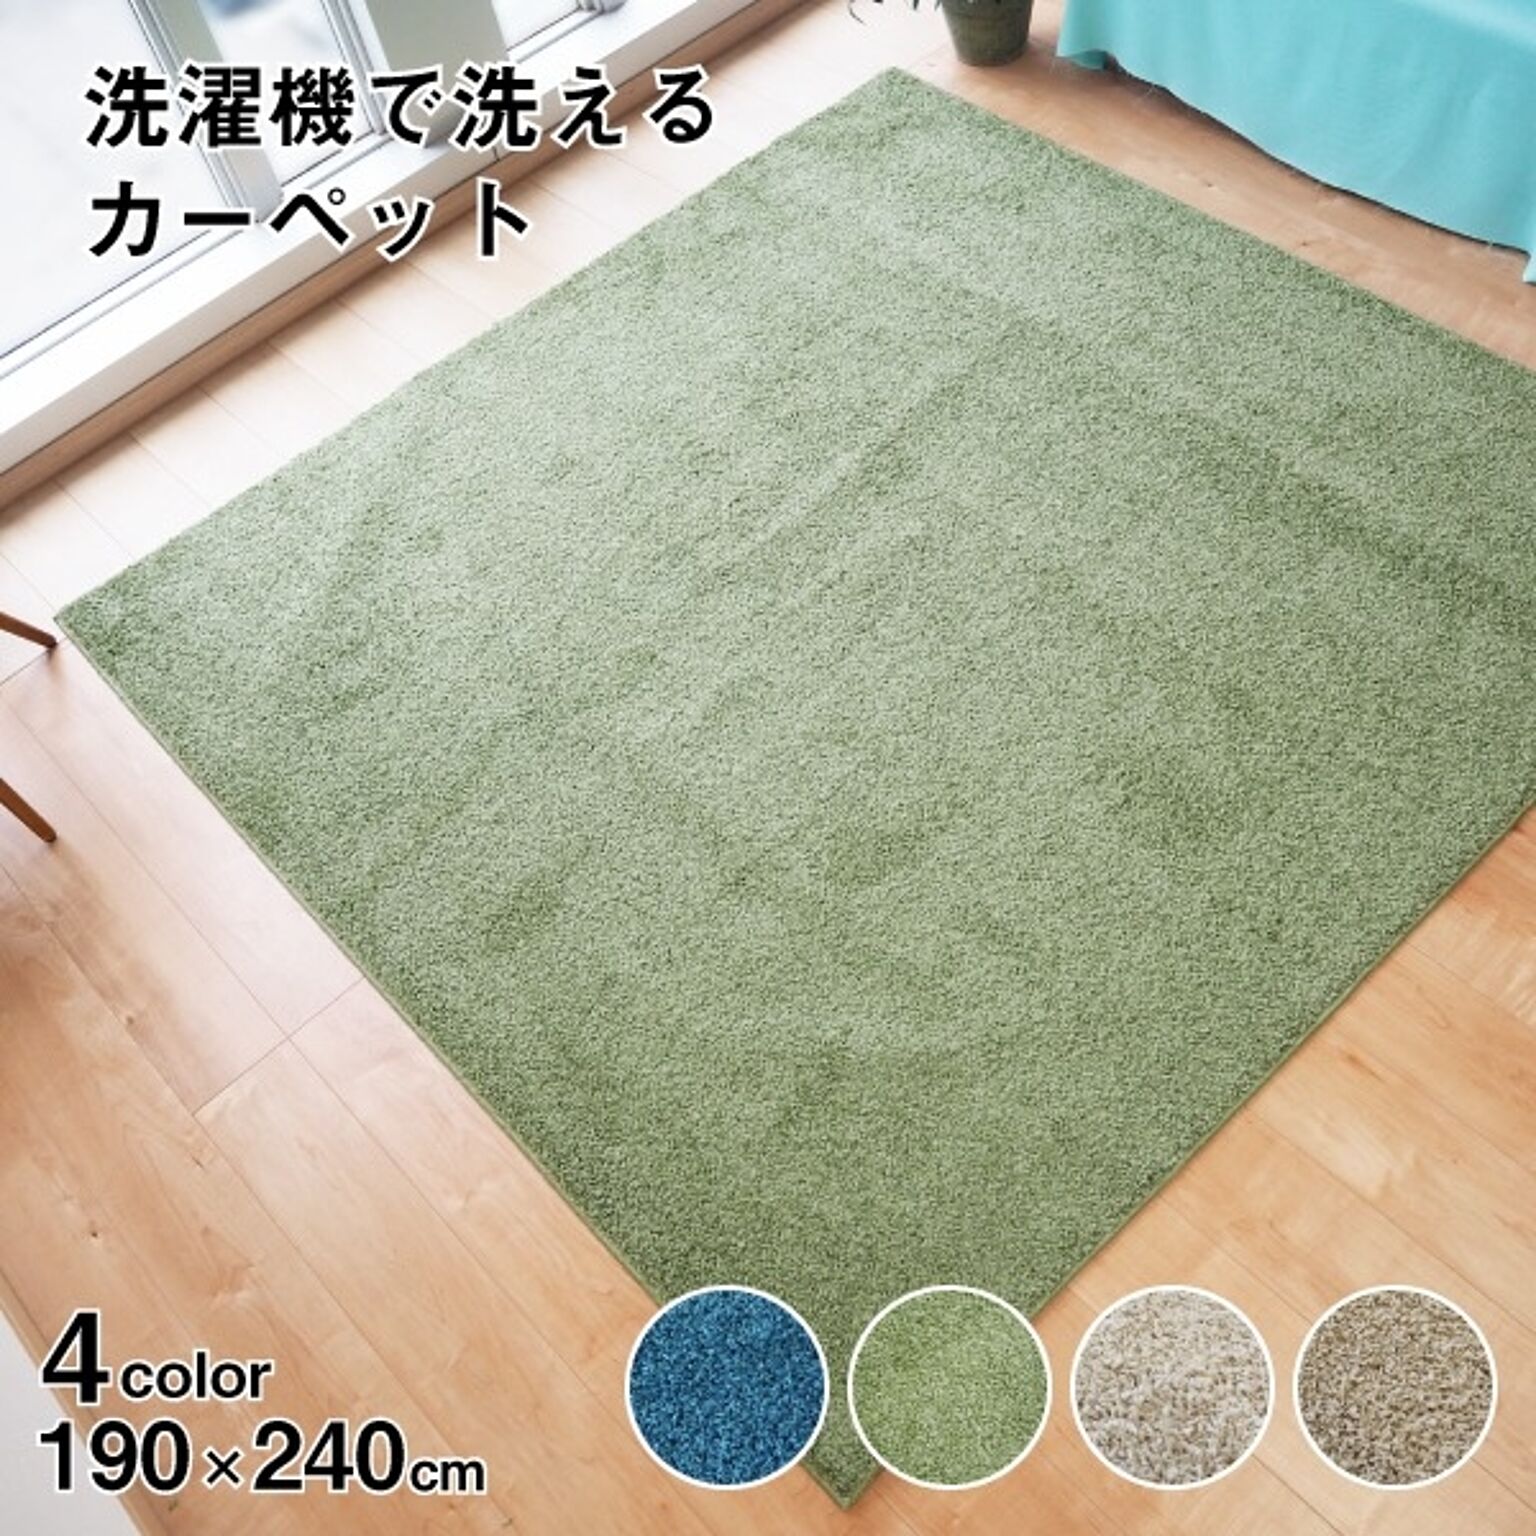 ラグマット 絨毯 約190cm×240cm グリーン 洗える 日本製 防ダニ 抗菌防臭 床暖房 ホットカーペット 通年使用可 ウォッシュ